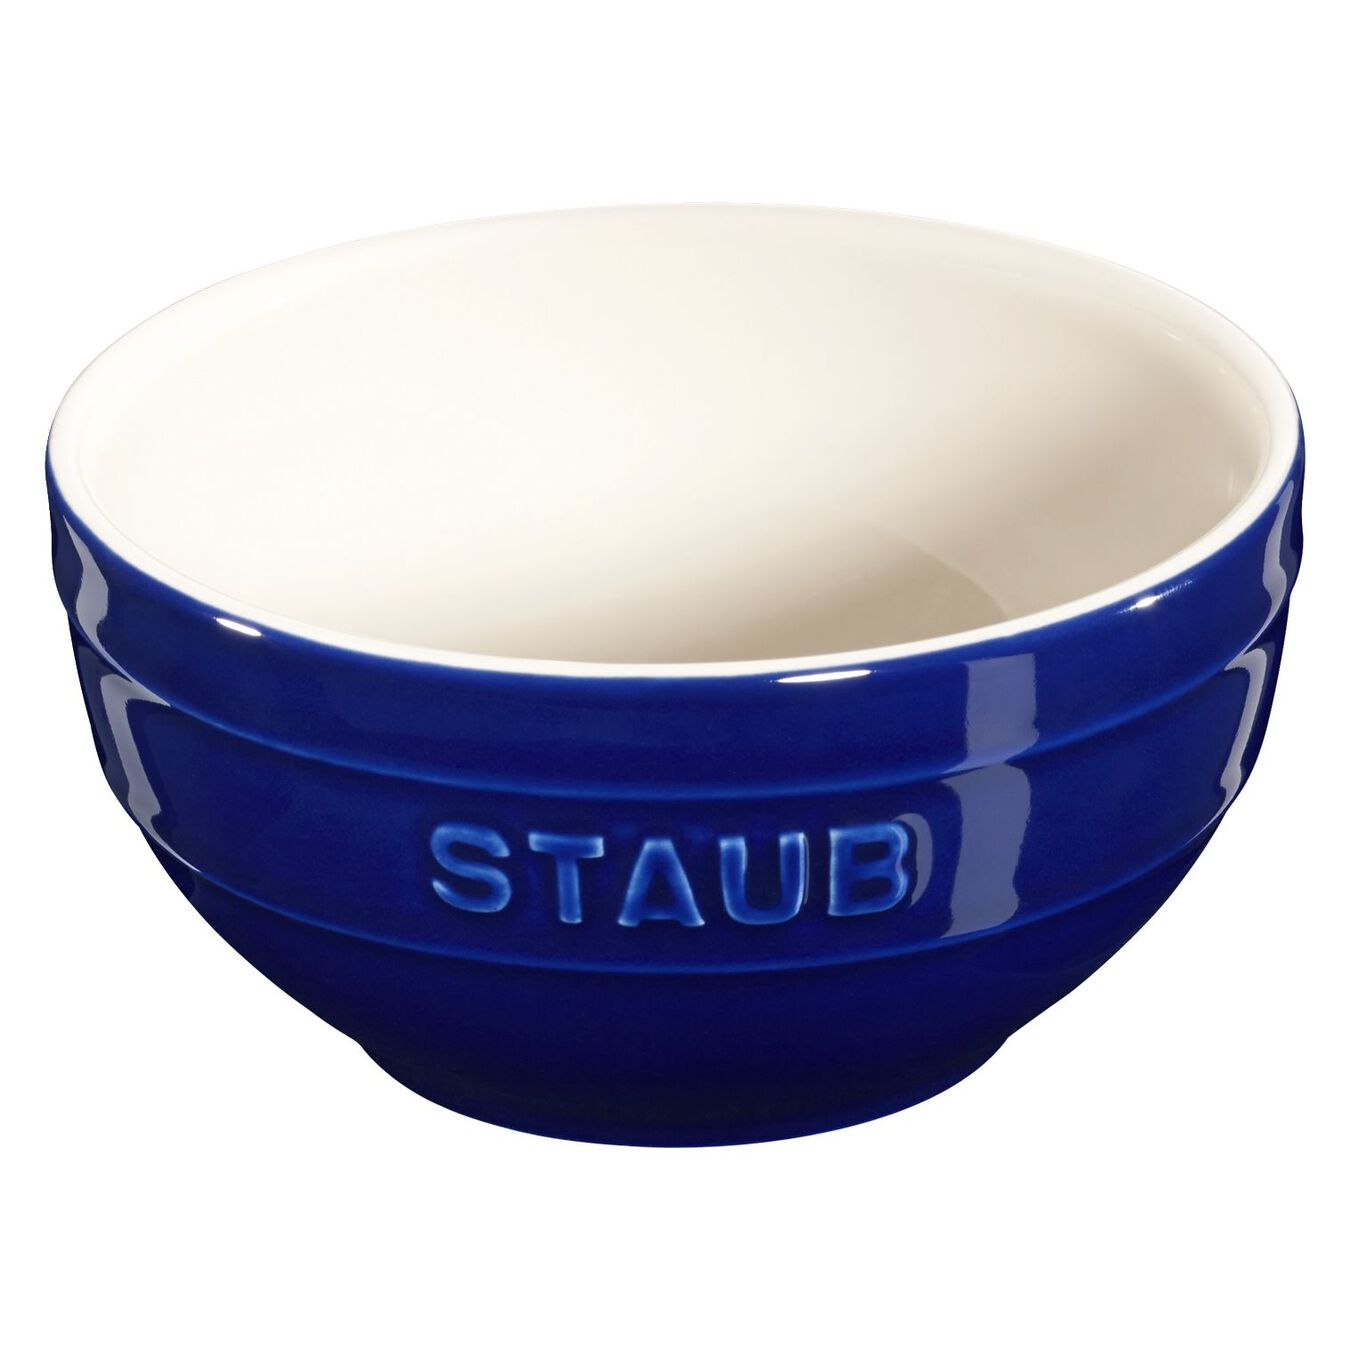 14 cm round Ceramic Bowl dark-blue,,large 2